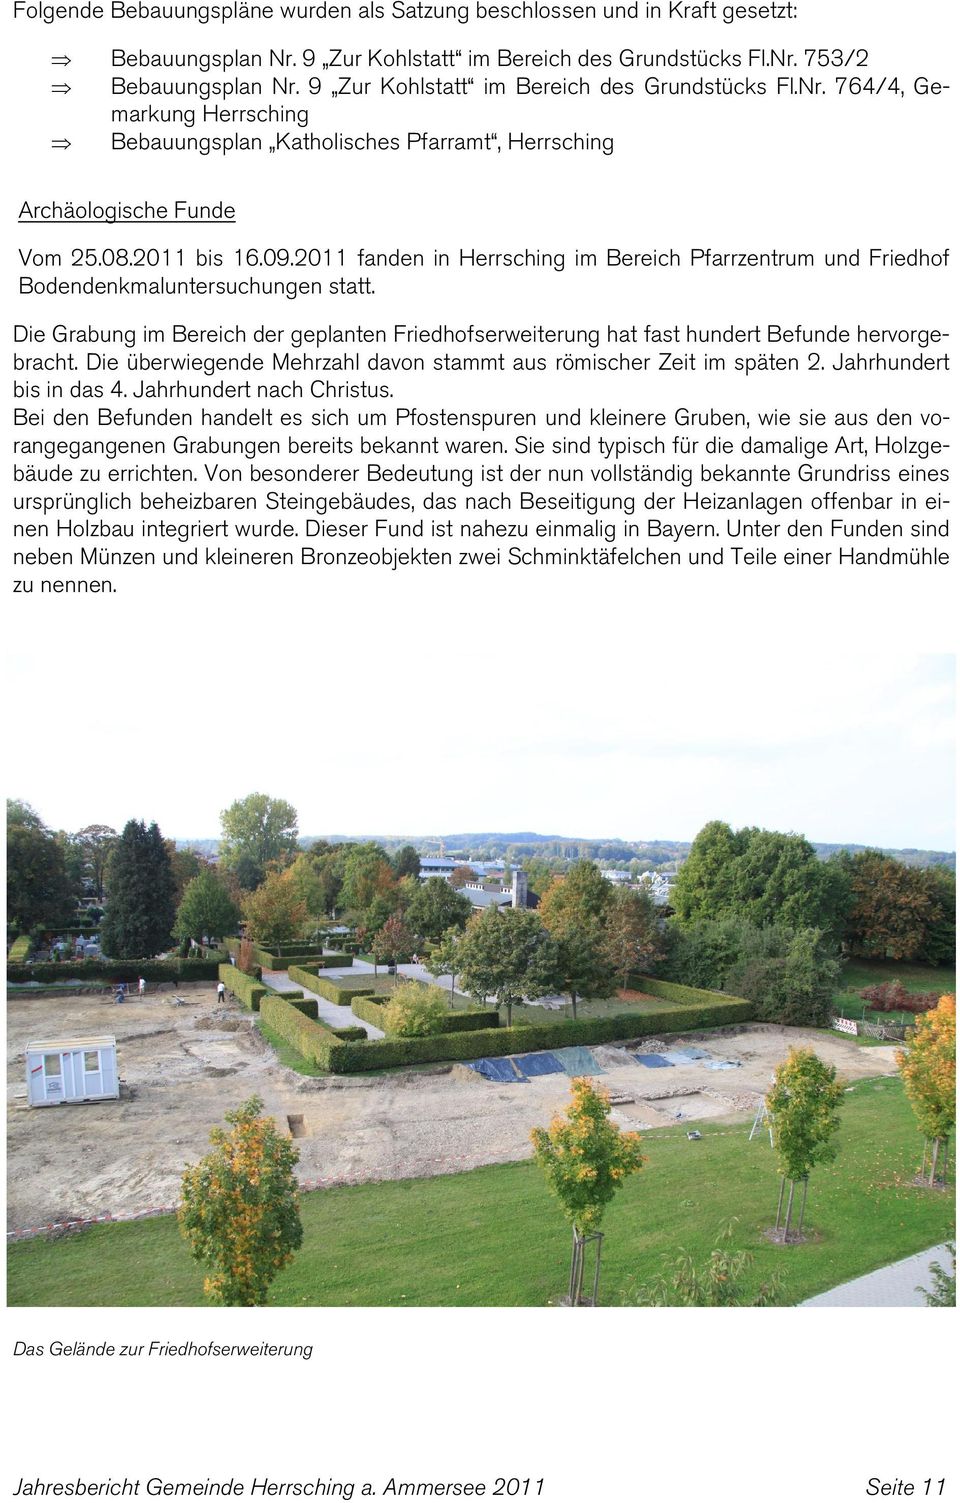 2011 fanden in Herrsching im Bereich Pfarrzentrum und Friedhof Bodendenkmaluntersuchungen statt. Die Grabung im Bereich der geplanten Friedhofserweiterung hat fast hundert Befunde hervorgebracht.